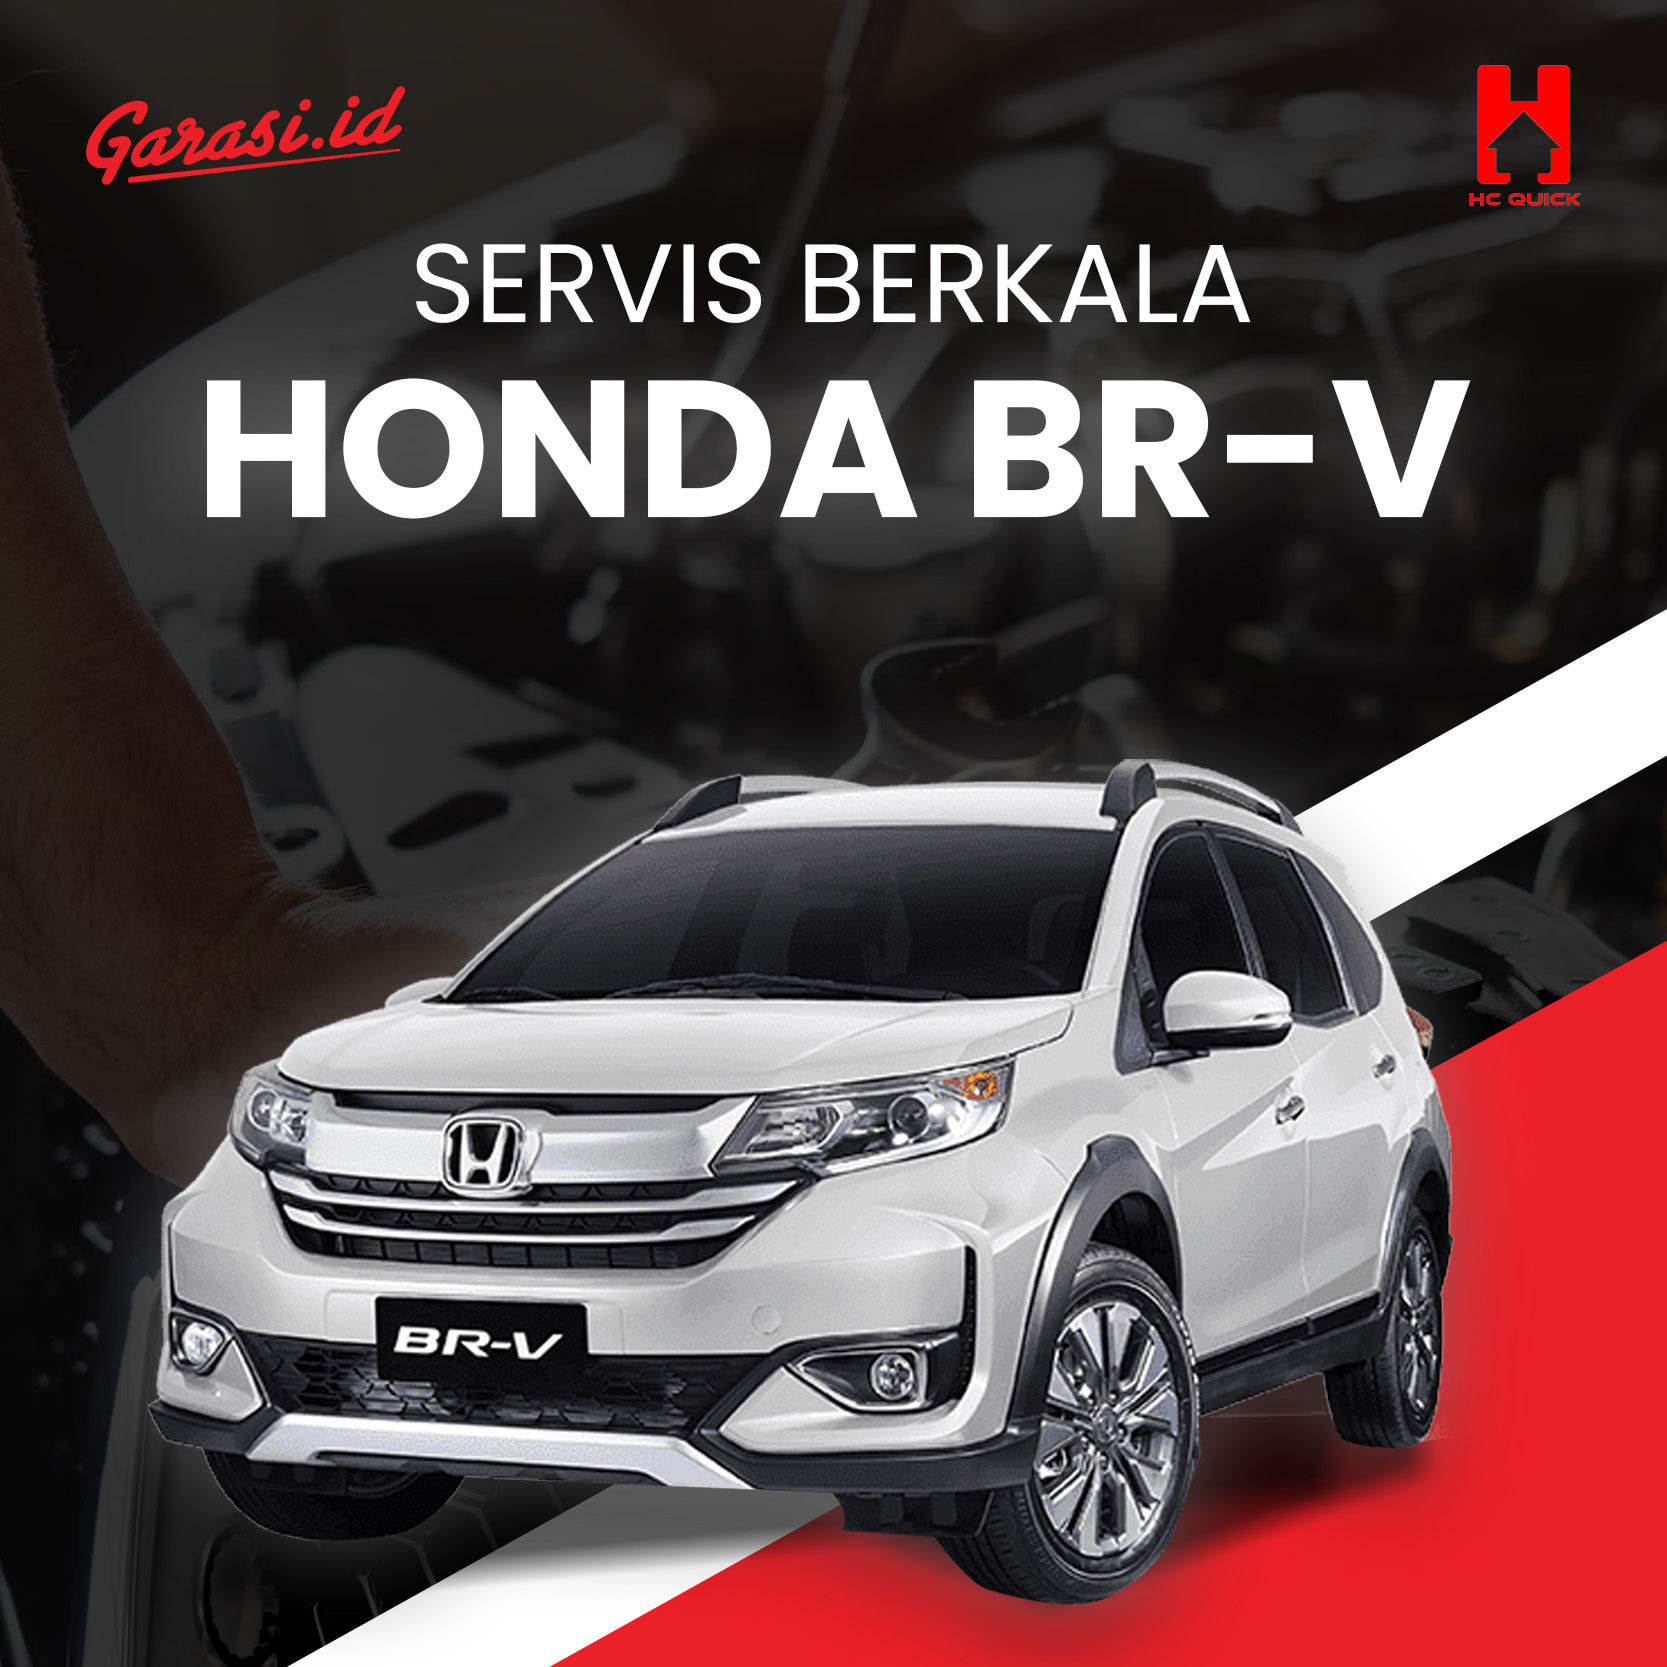 Paket perawatan service berkala Honda BR-V